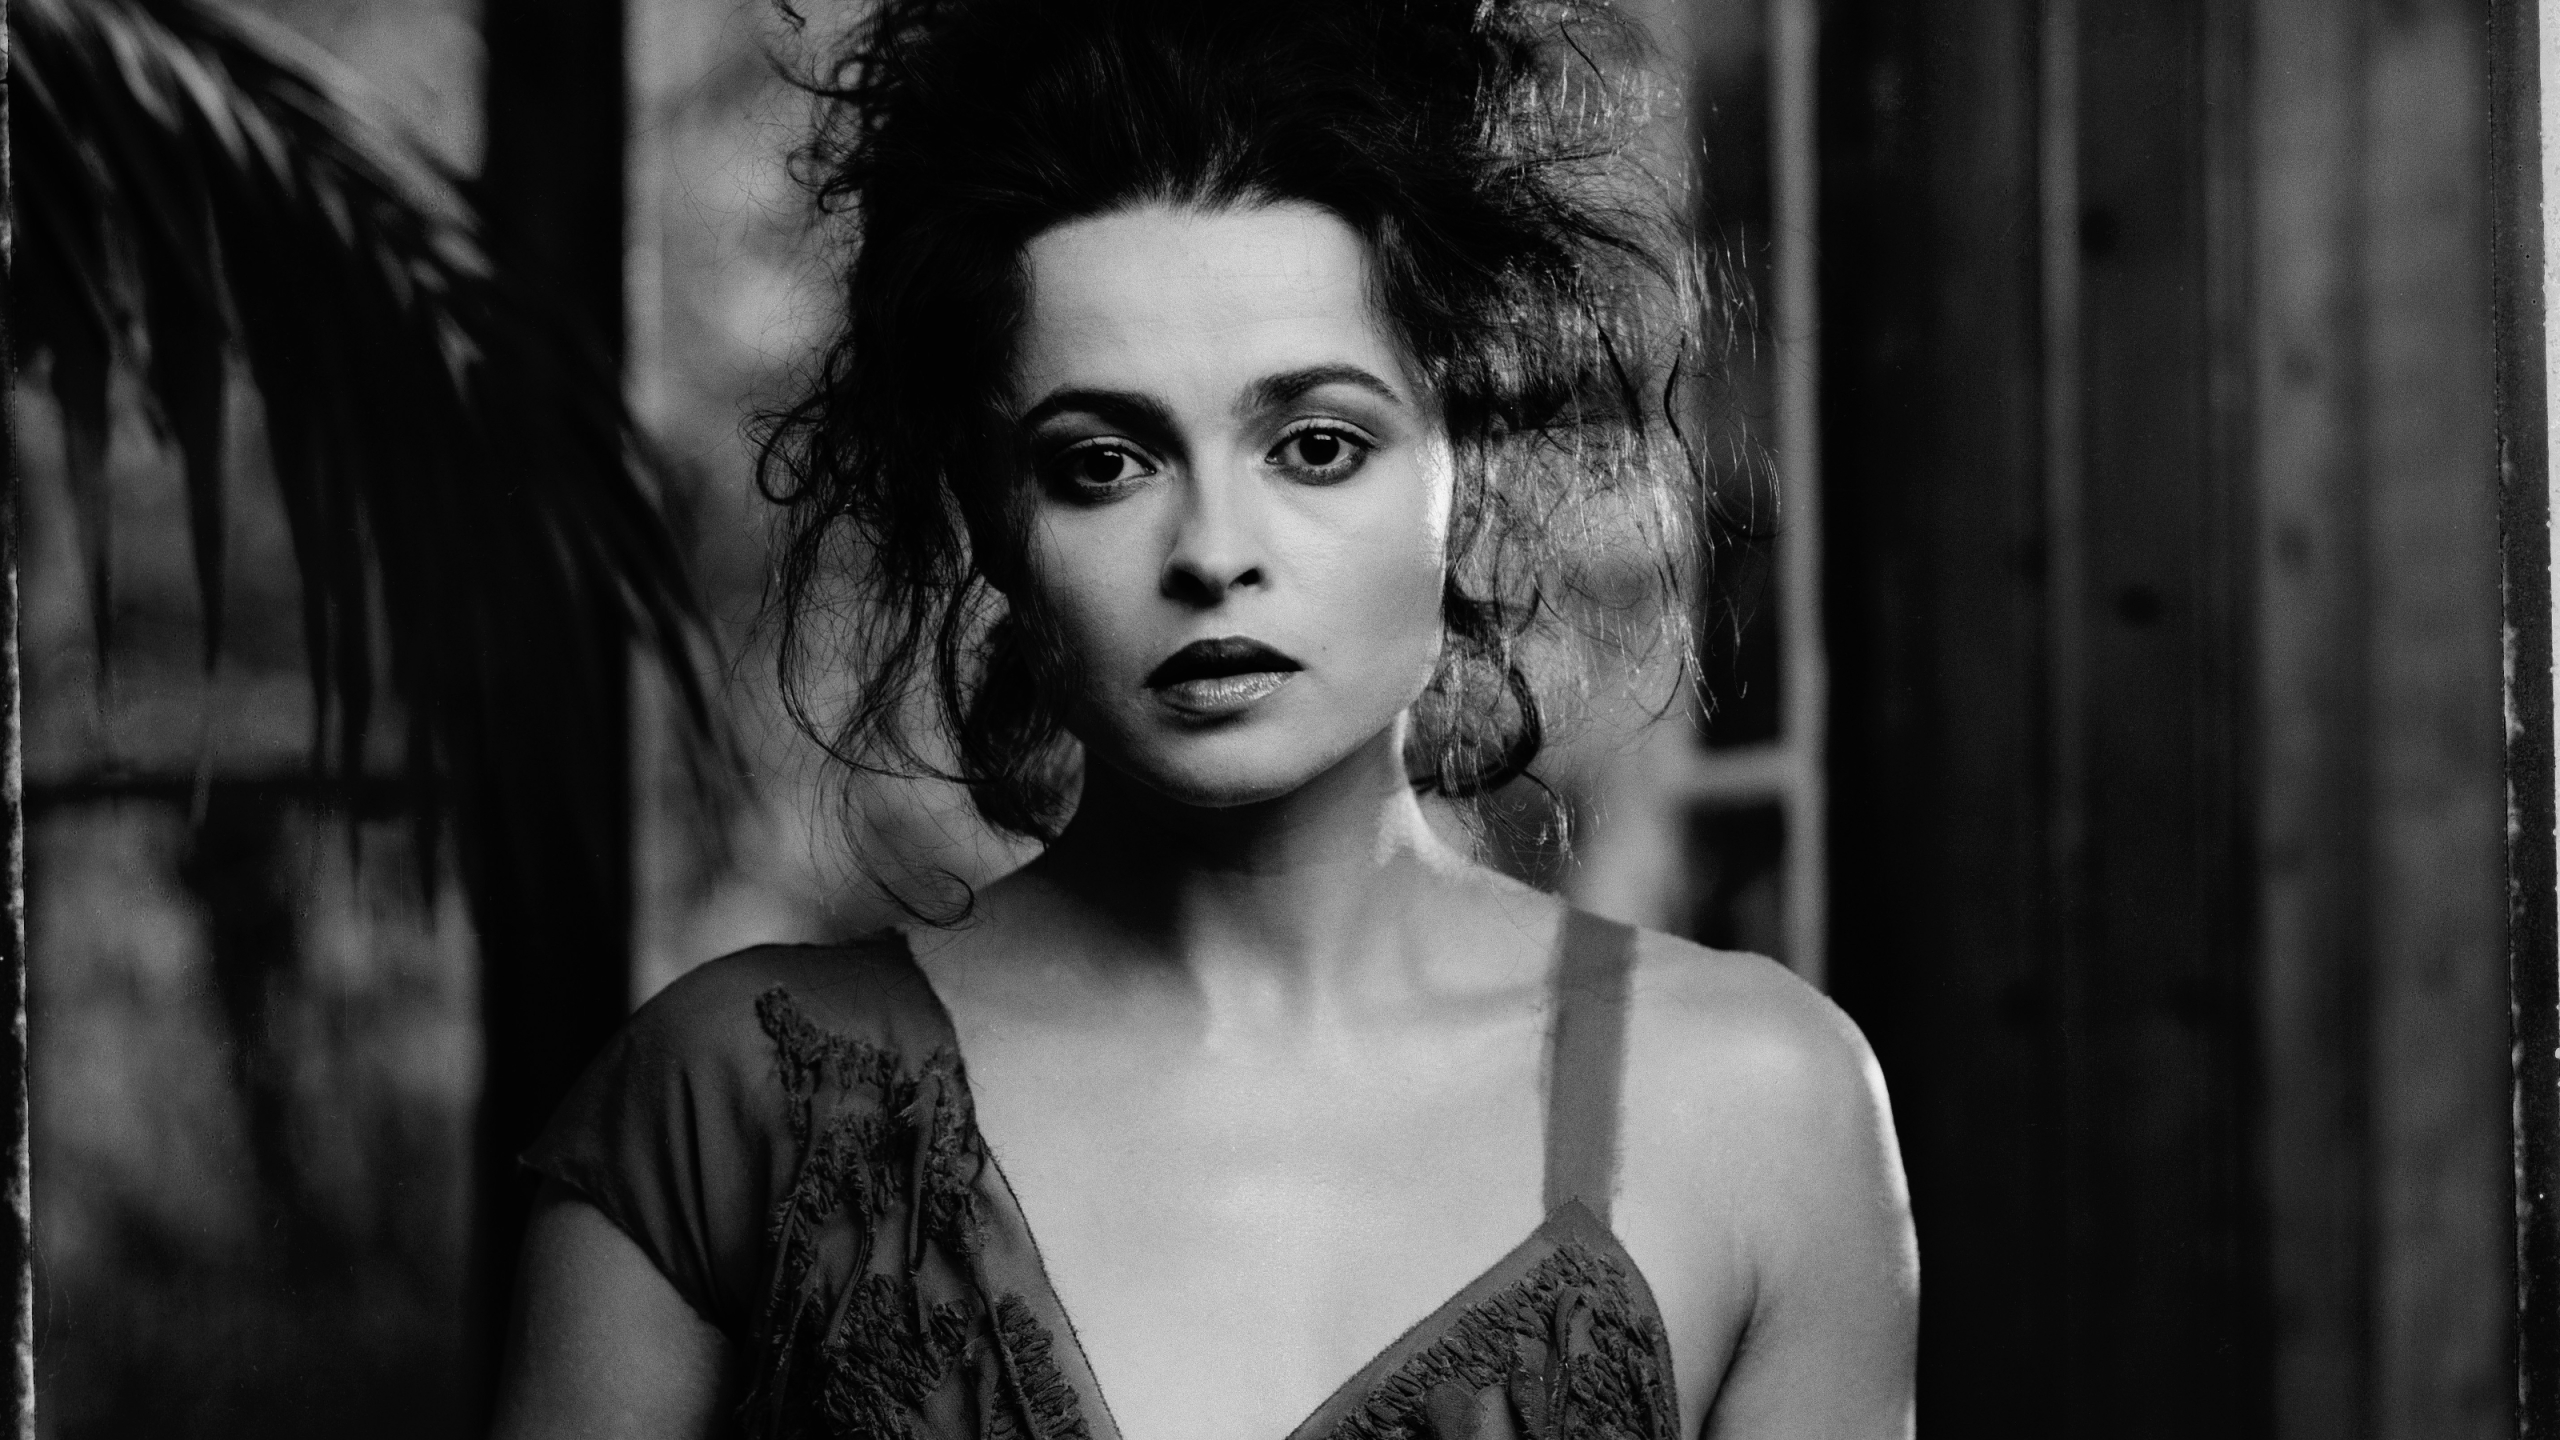 Helena Bonham Carter Nighty Image 1440P